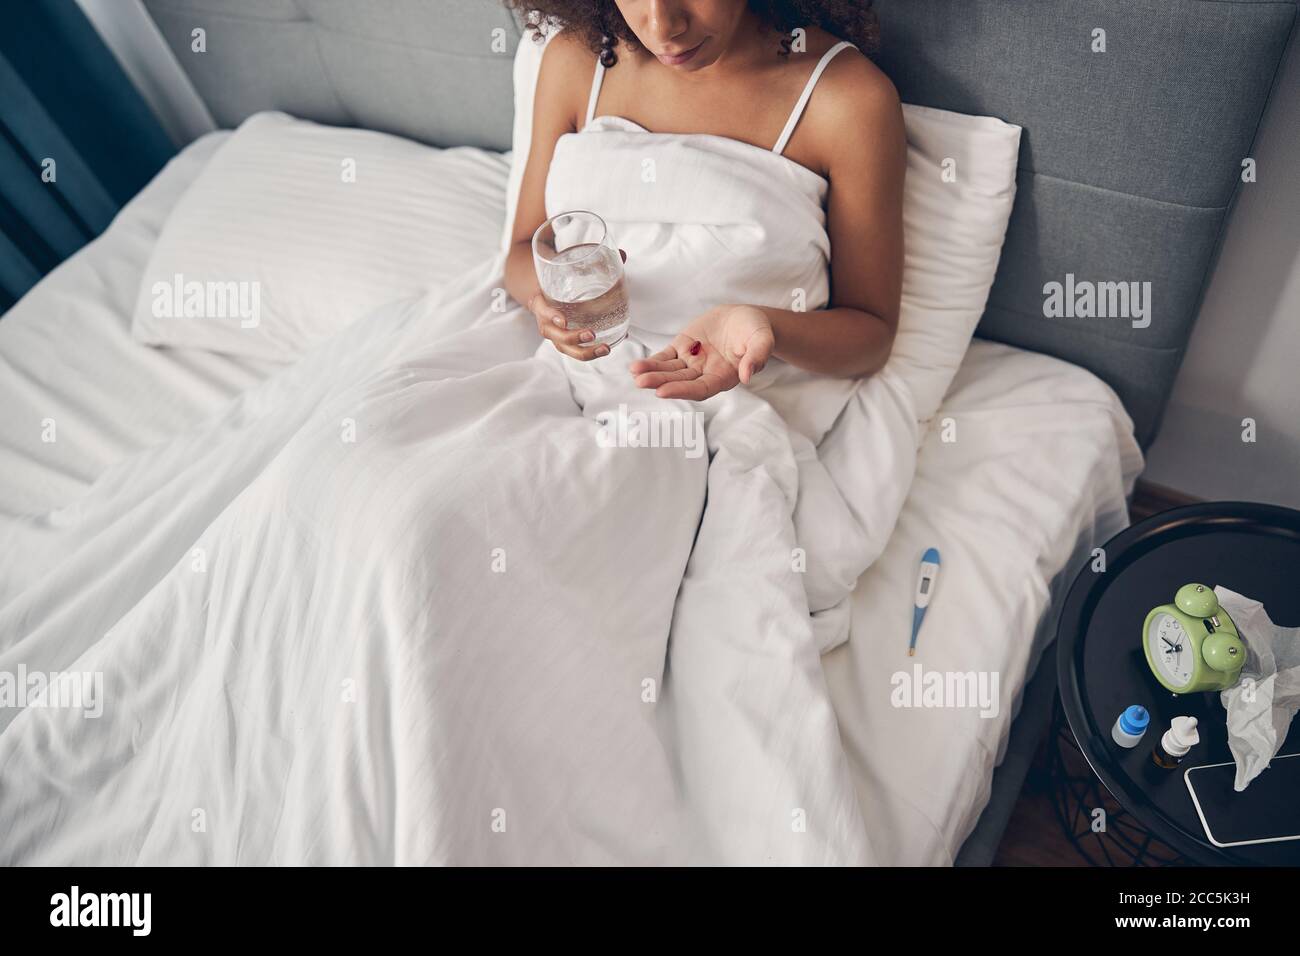 Dunkelhaarige Frau mit einem Glas Wasser im Bett Stockfoto